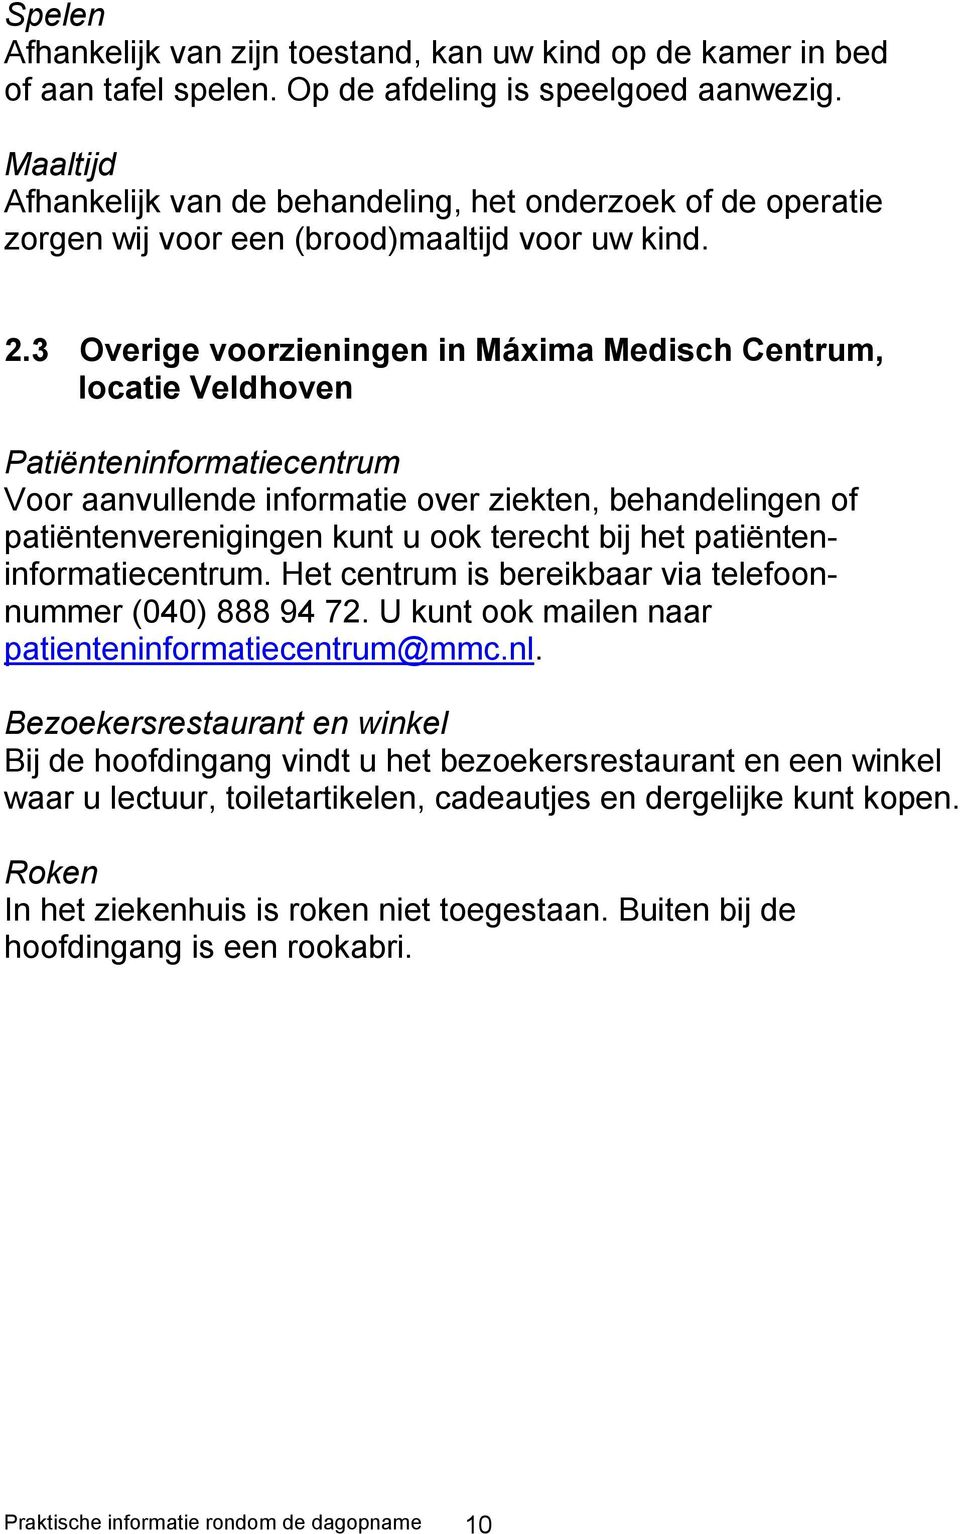 3 Overige voorzieningen in Máxima Medisch Centrum, locatie Veldhoven Patiënteninformatiecentrum Voor aanvullende informatie over ziekten, behandelingen of patiëntenverenigingen kunt u ook terecht bij